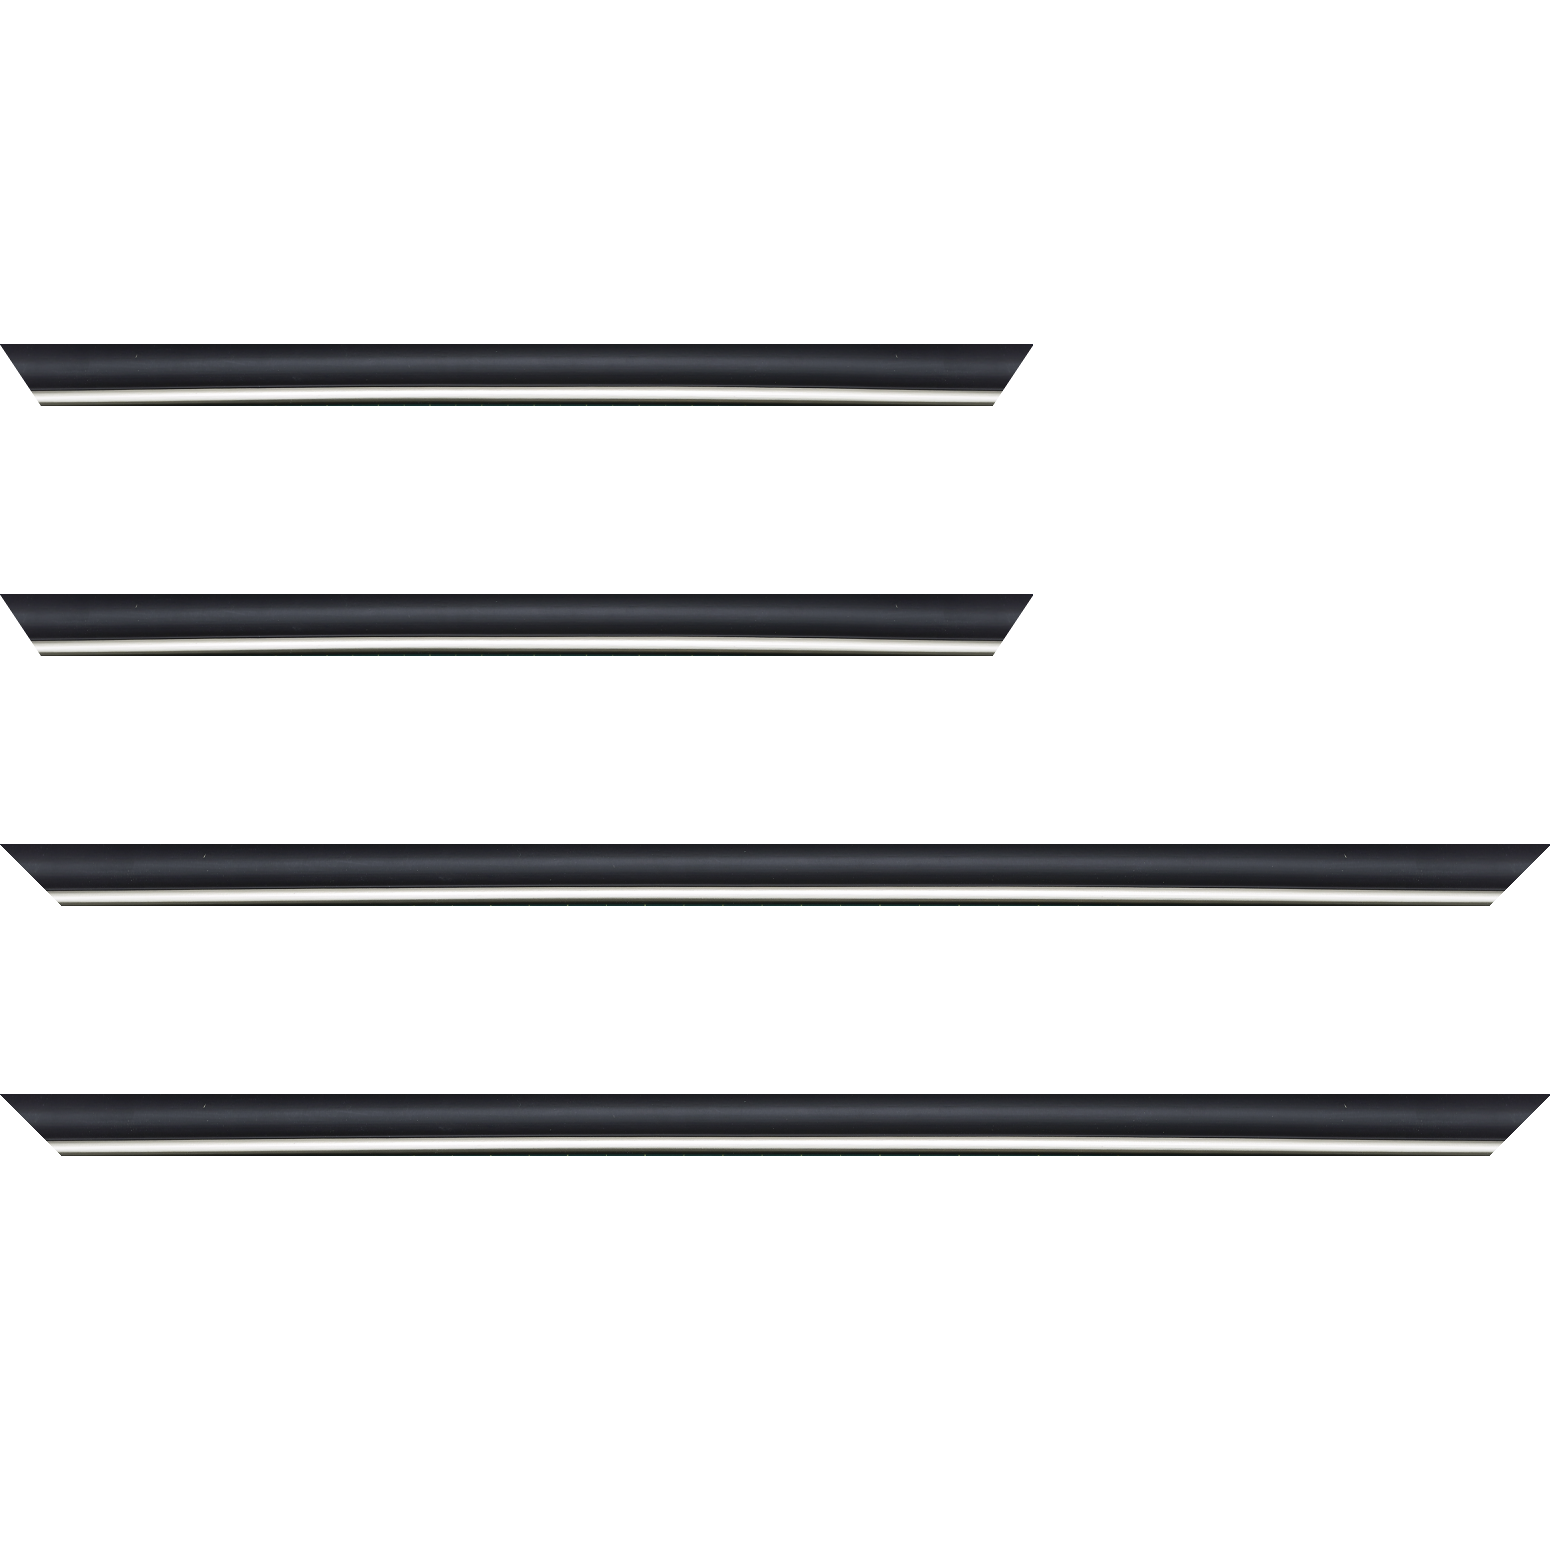 Baguette bois profil arrondi largeur 2.1cm couleur noir mat filet argent